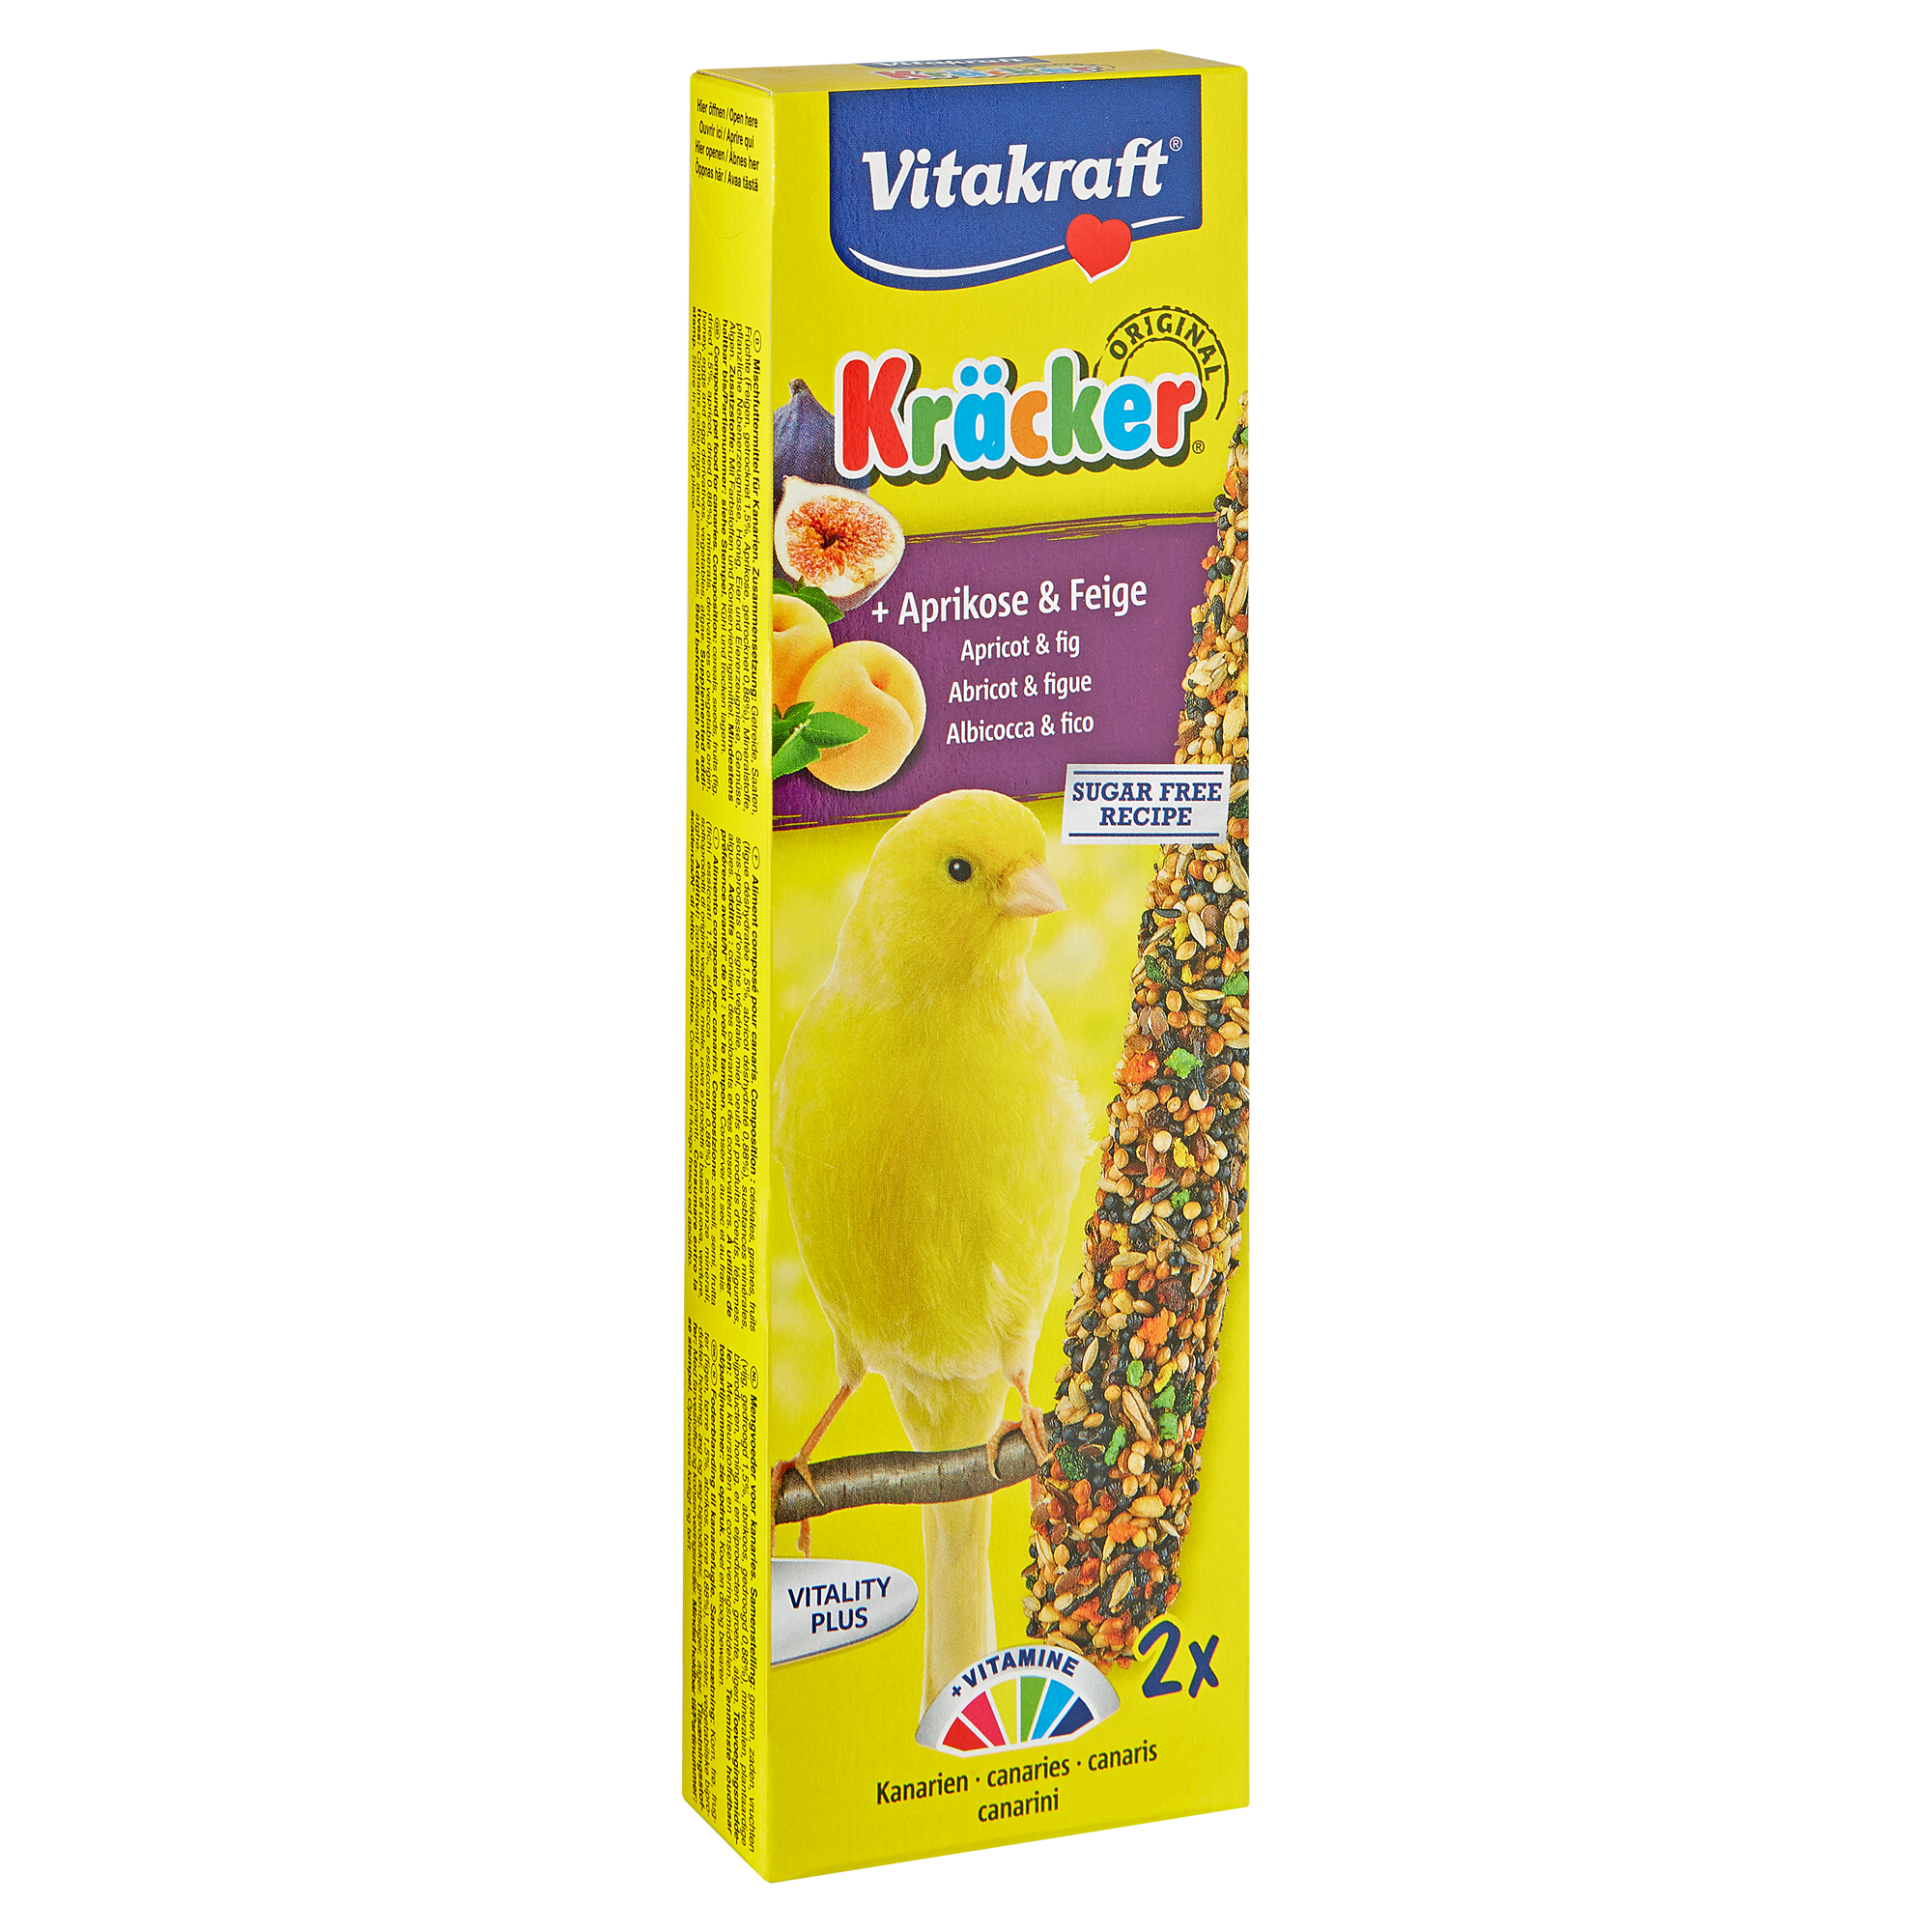 Kanarienfutter "Kräcker® Original" Aprikose & Feige 2 Stück + product picture